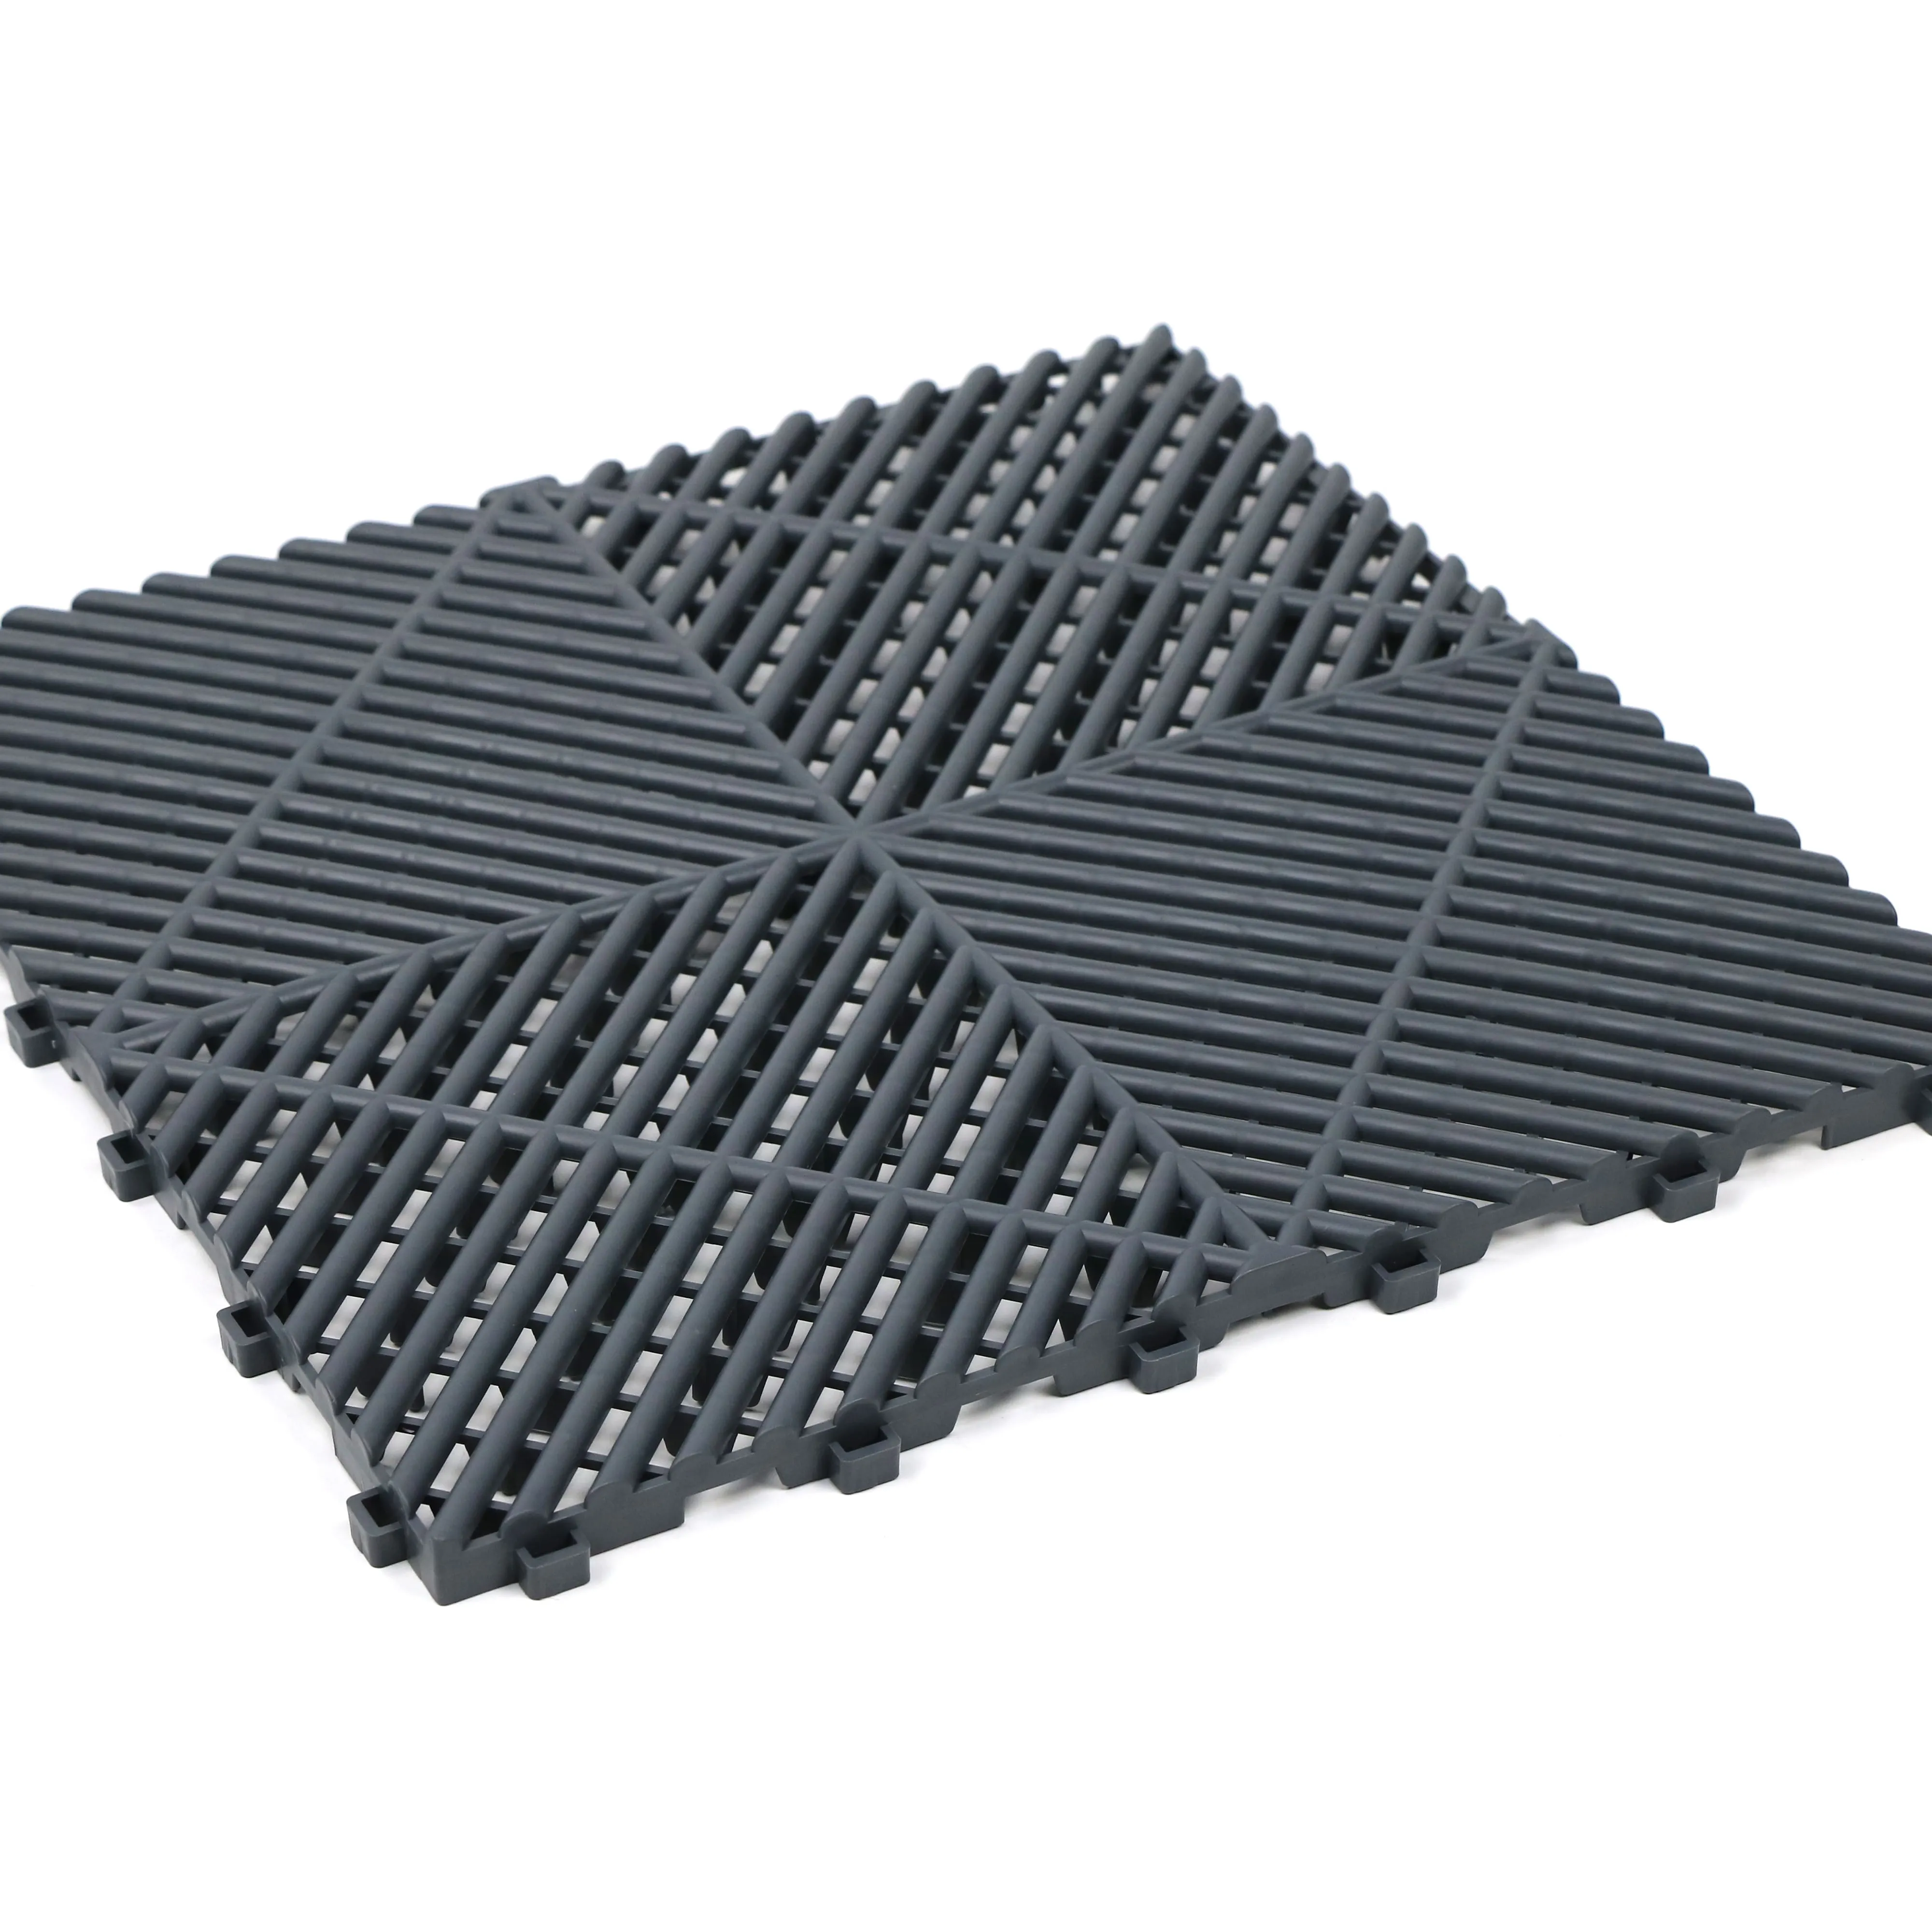 Hot Sale Anti-Rutsch-PP-Bodenfliesen Tragbare Kunststoff-Boden matte für Auto waschräume